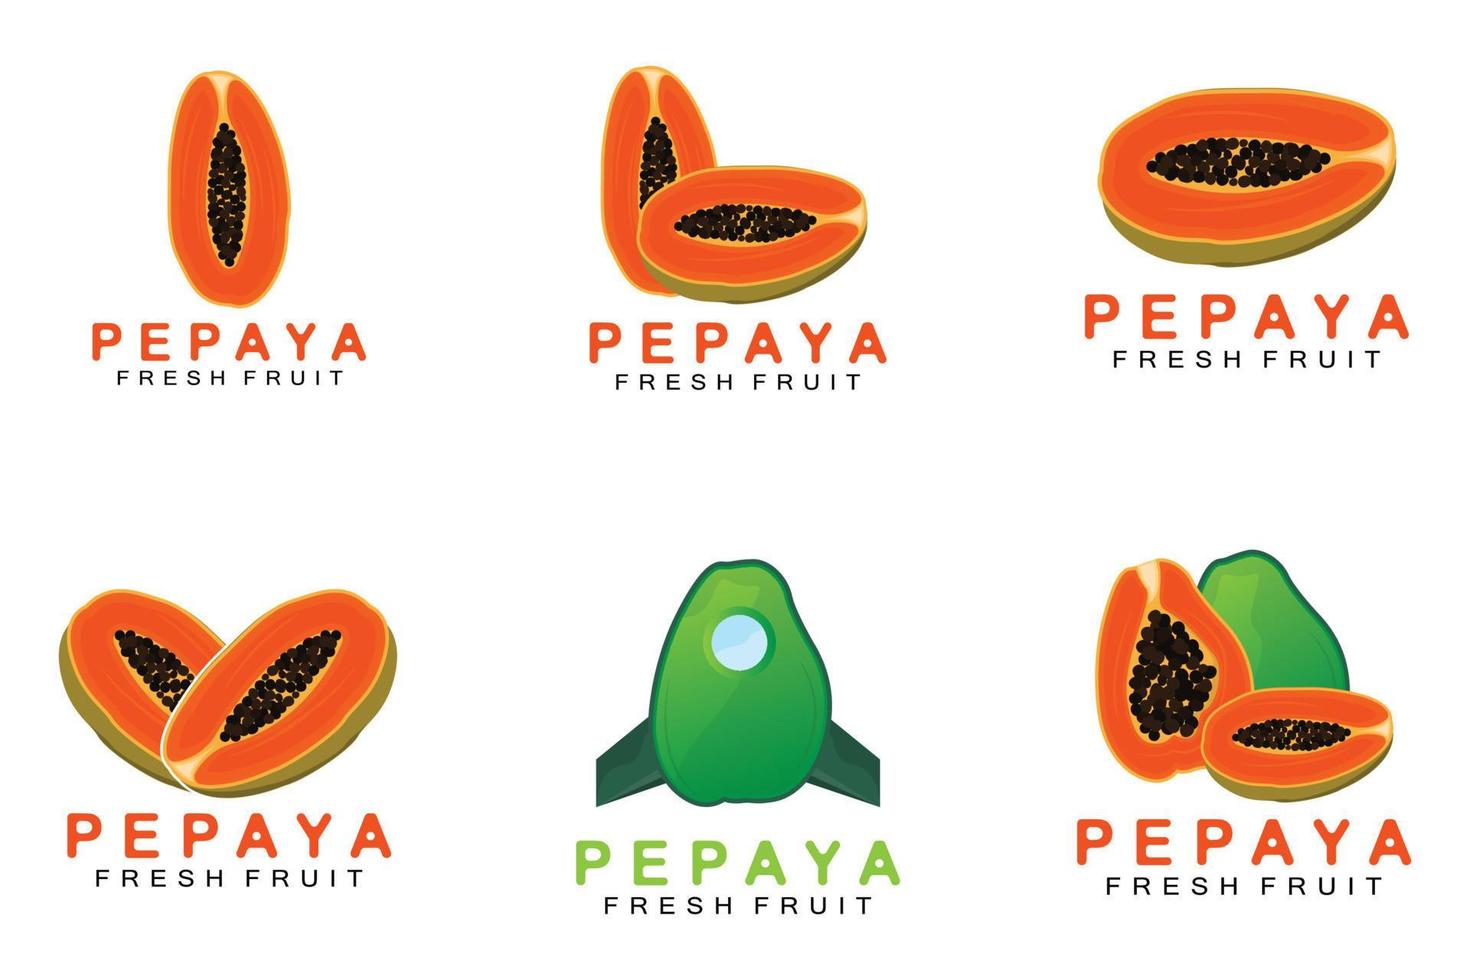 strutturato arancia frutta design papaia logo, papaia albero marca Prodotto etichetta vettore, frutta mercato vettore